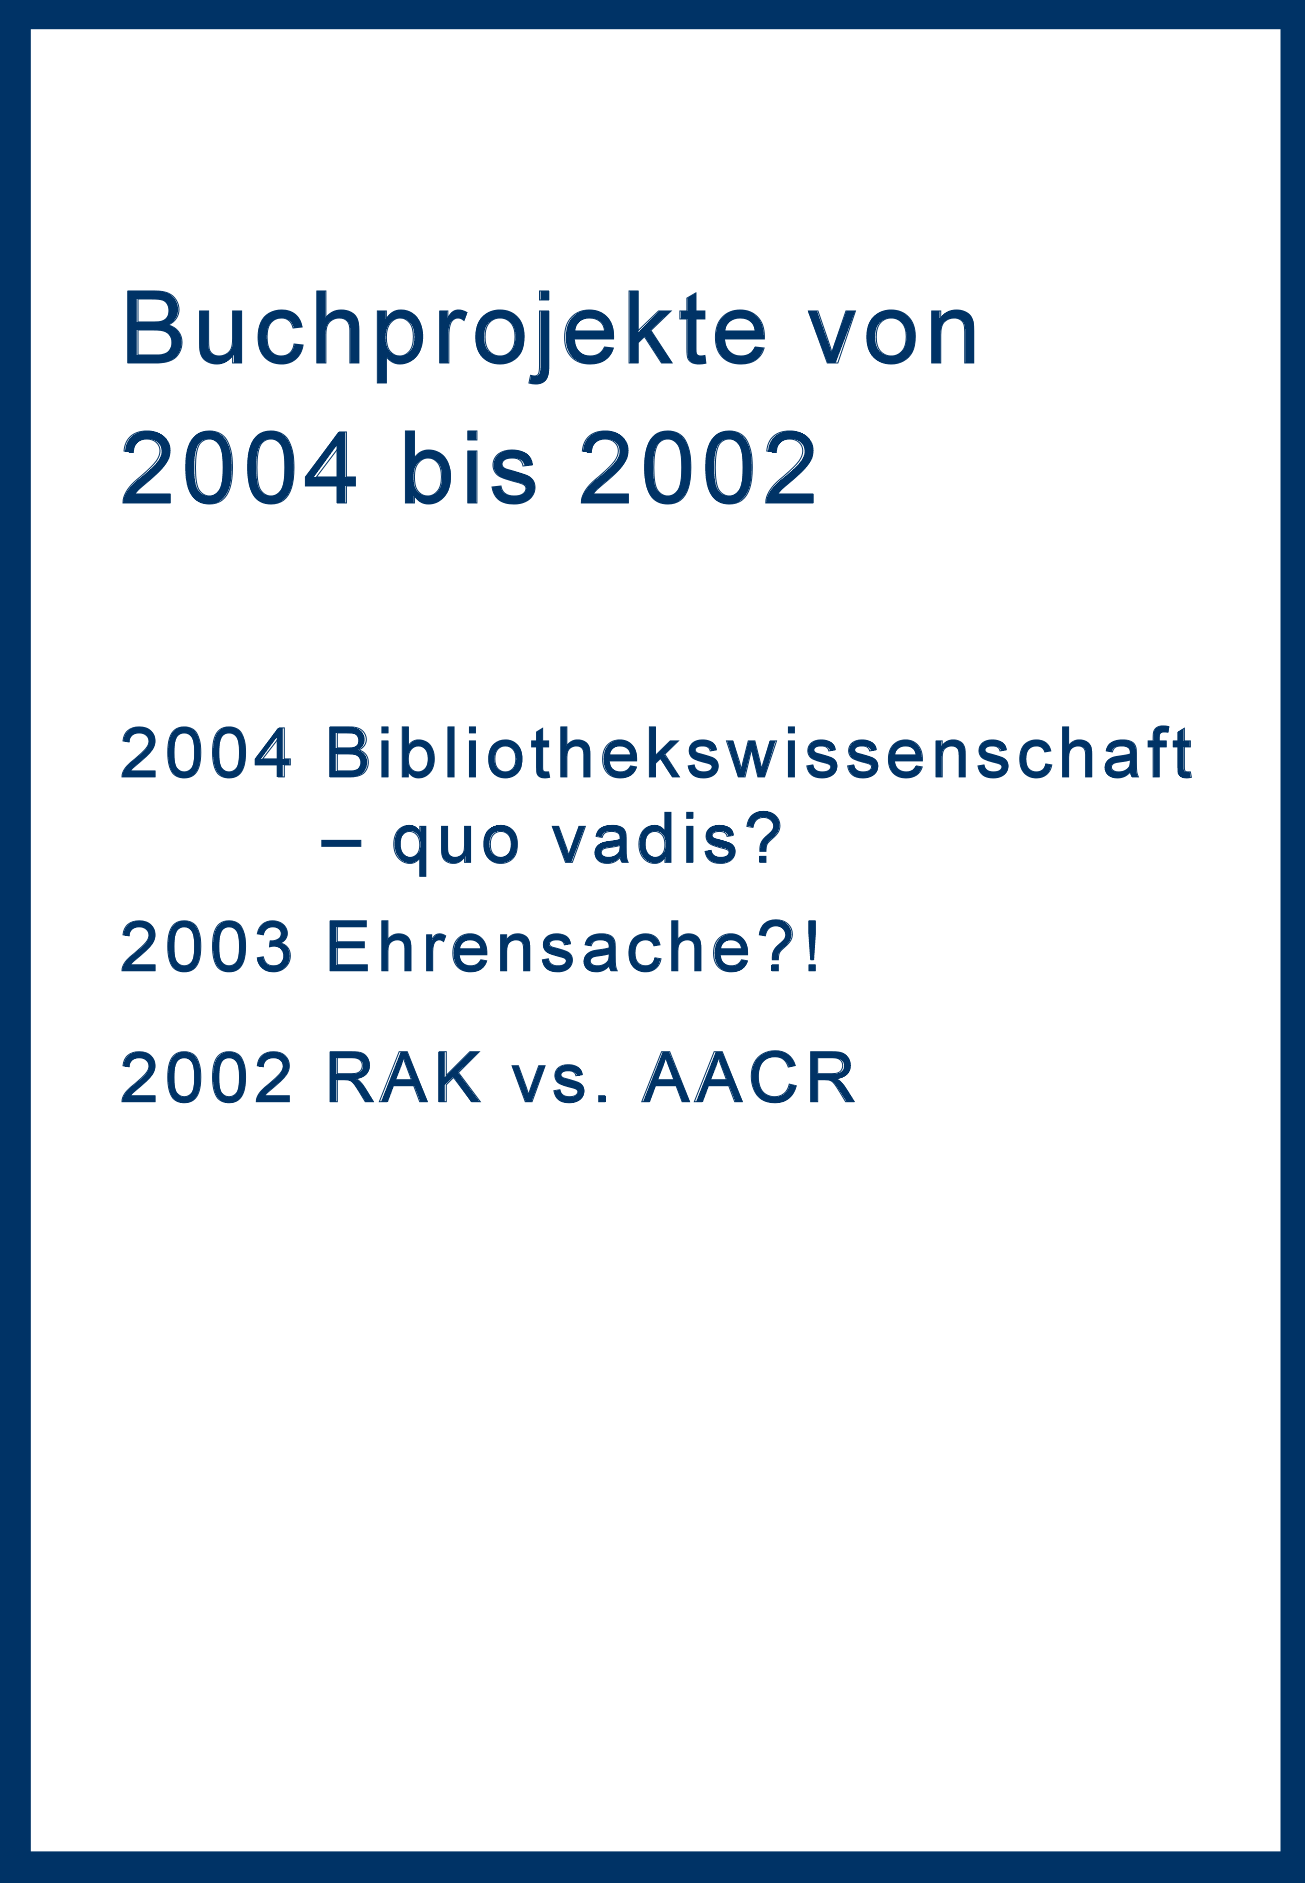 Buchprojekte von 2004 bis 2002